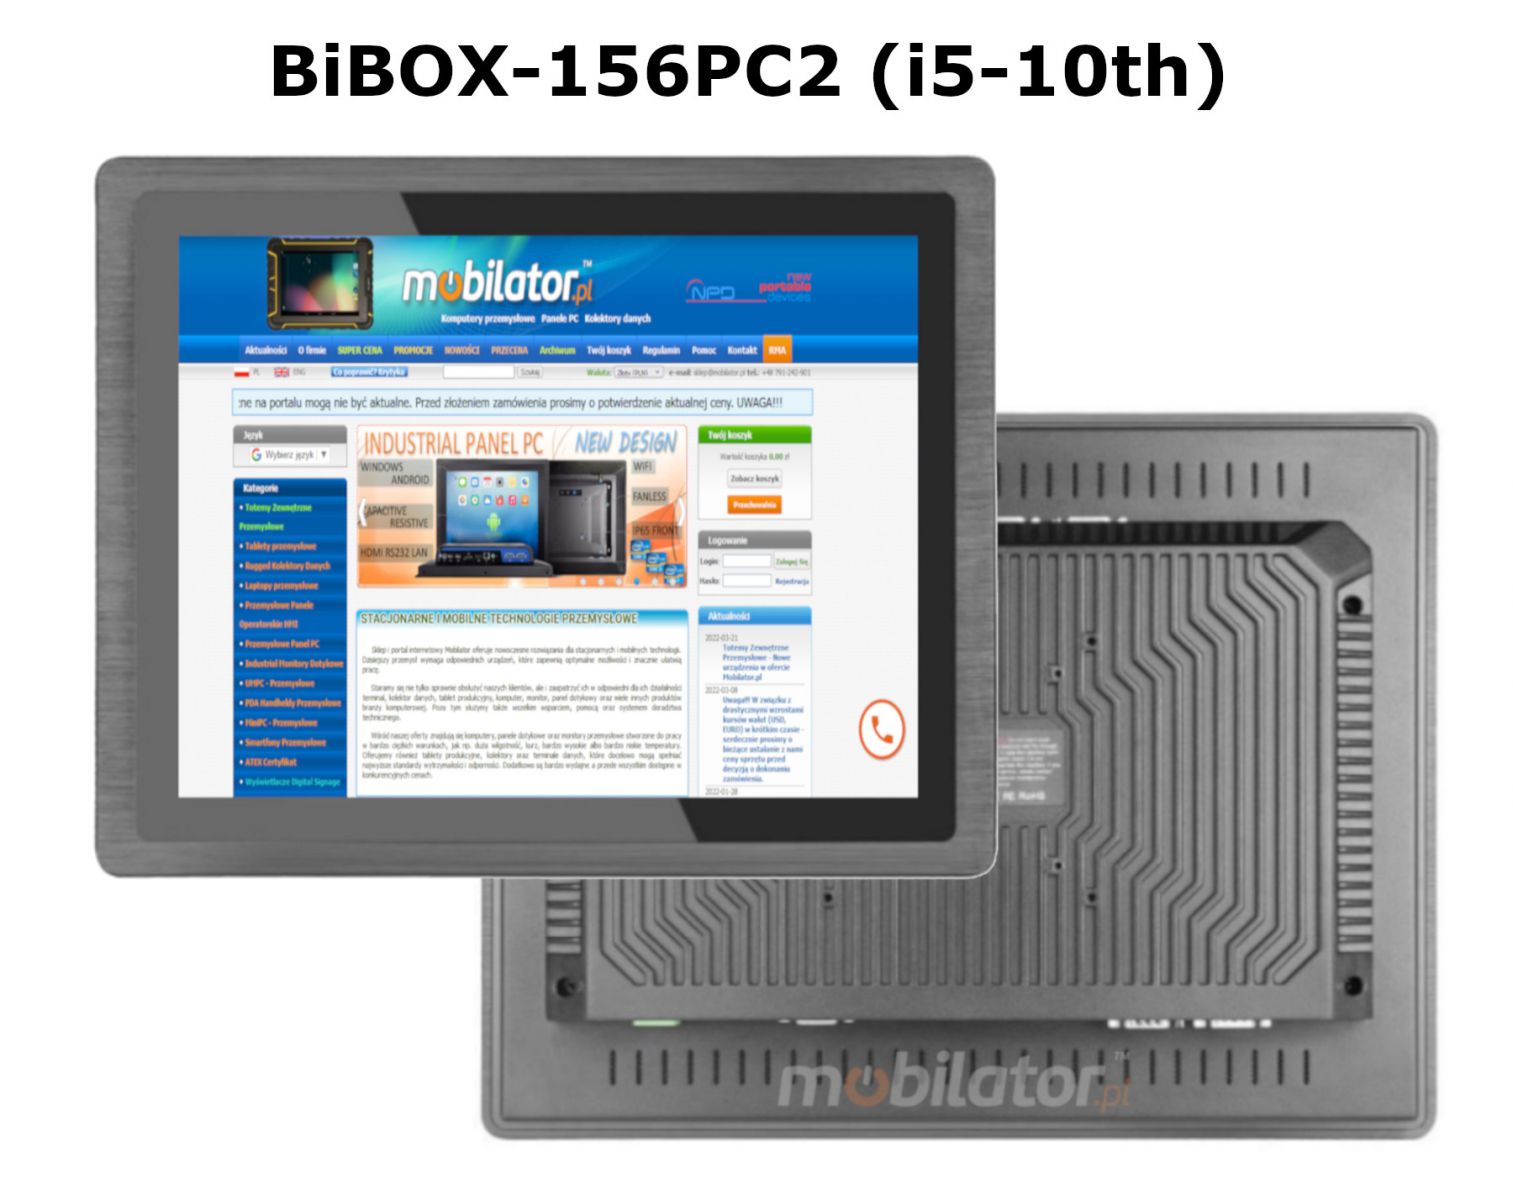 odporny i pojemny panel BIBOX-156PC2 wyposaony w WiFi I bluetooth